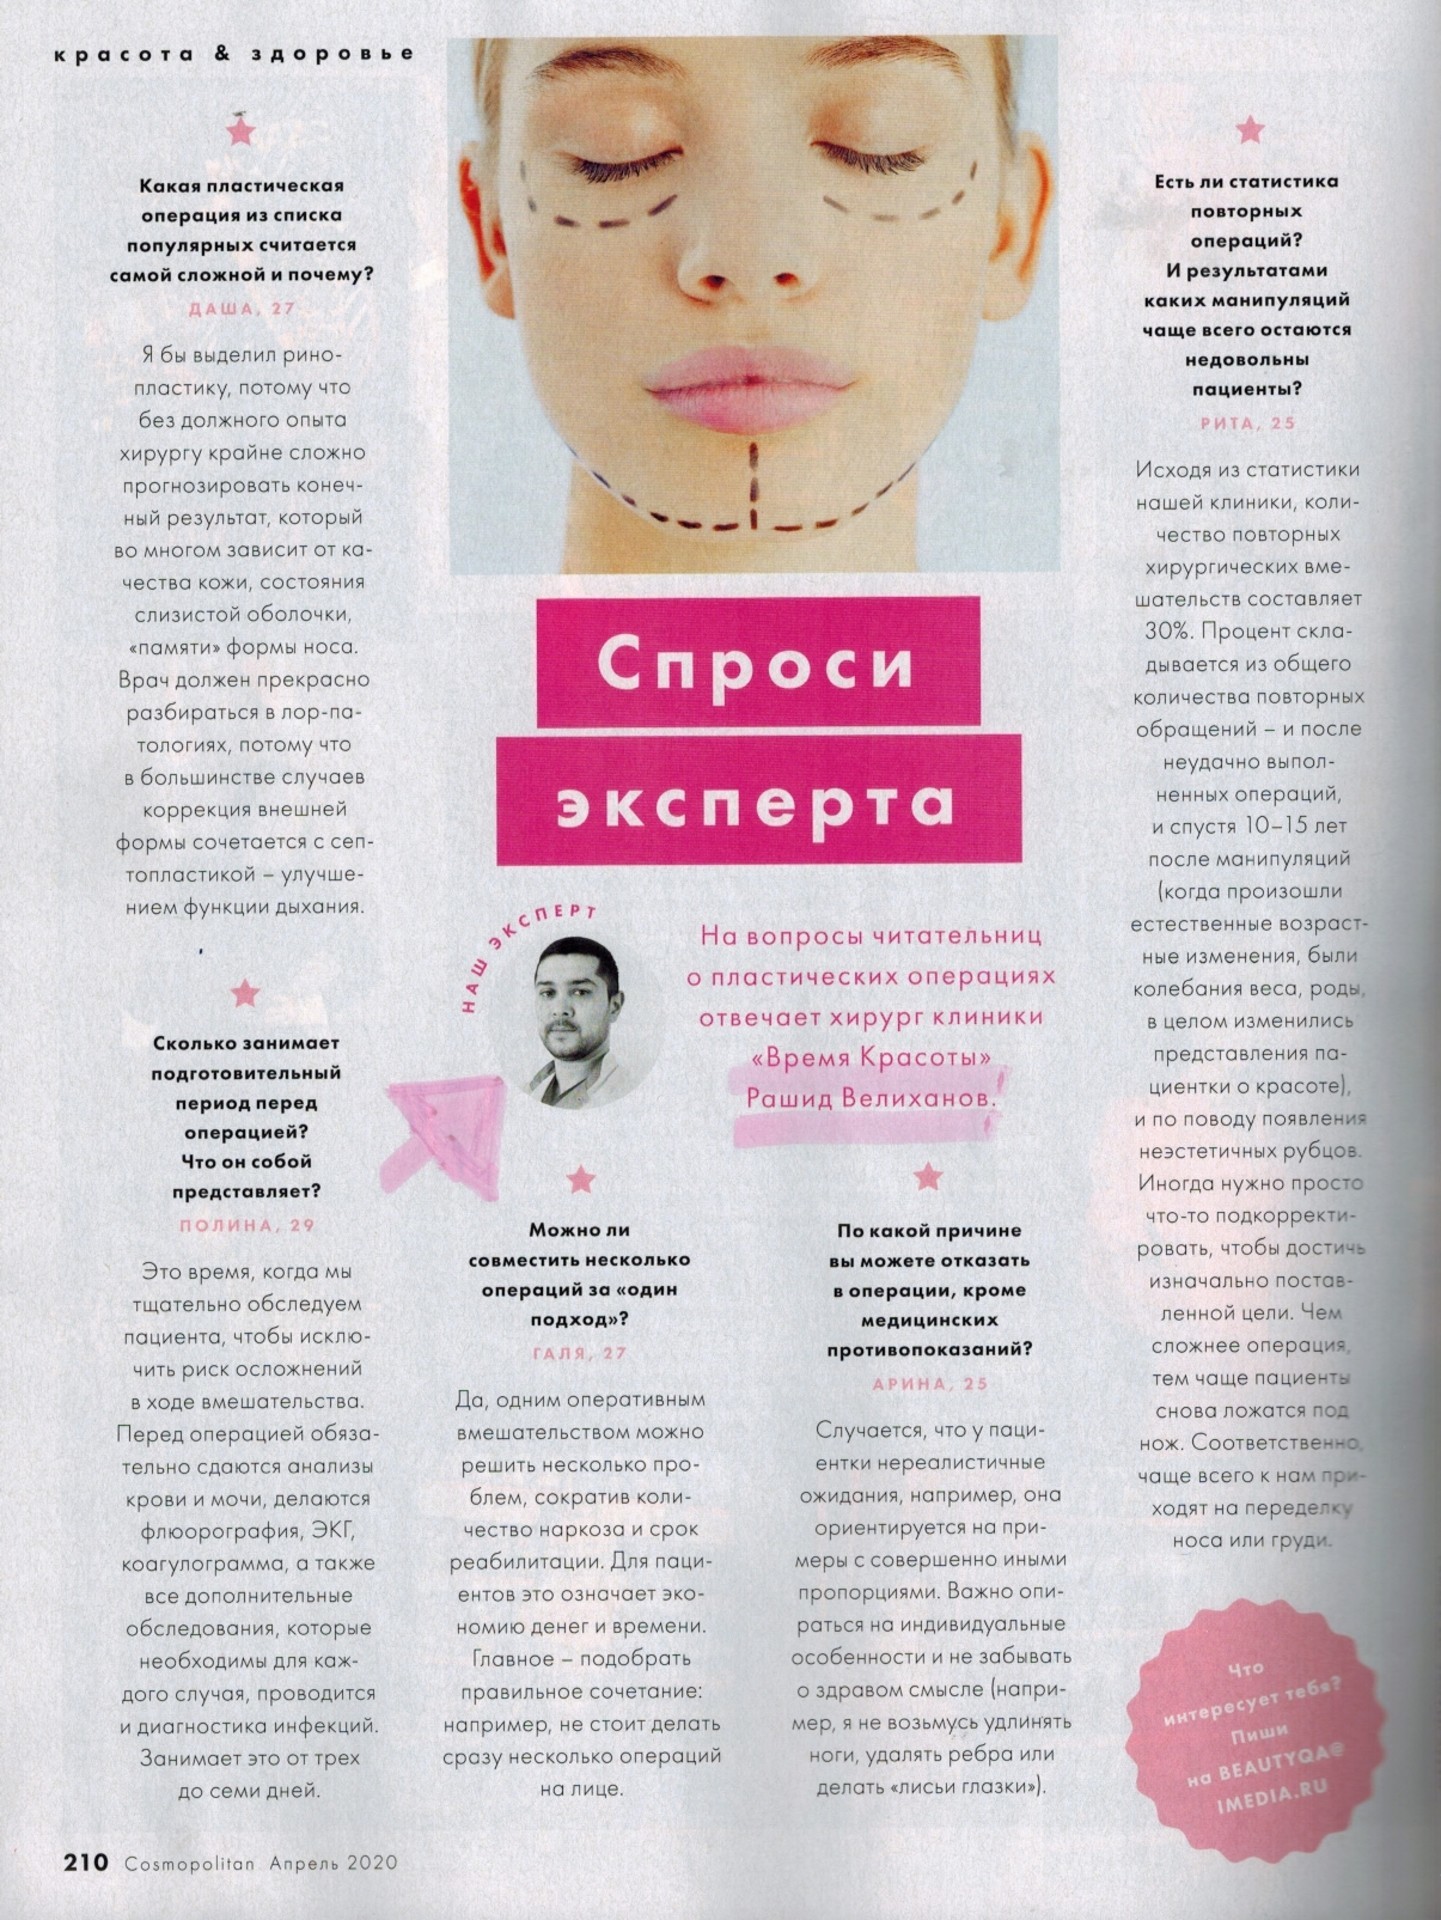 Журнал Cosmopolitan о клинике Время Красоты